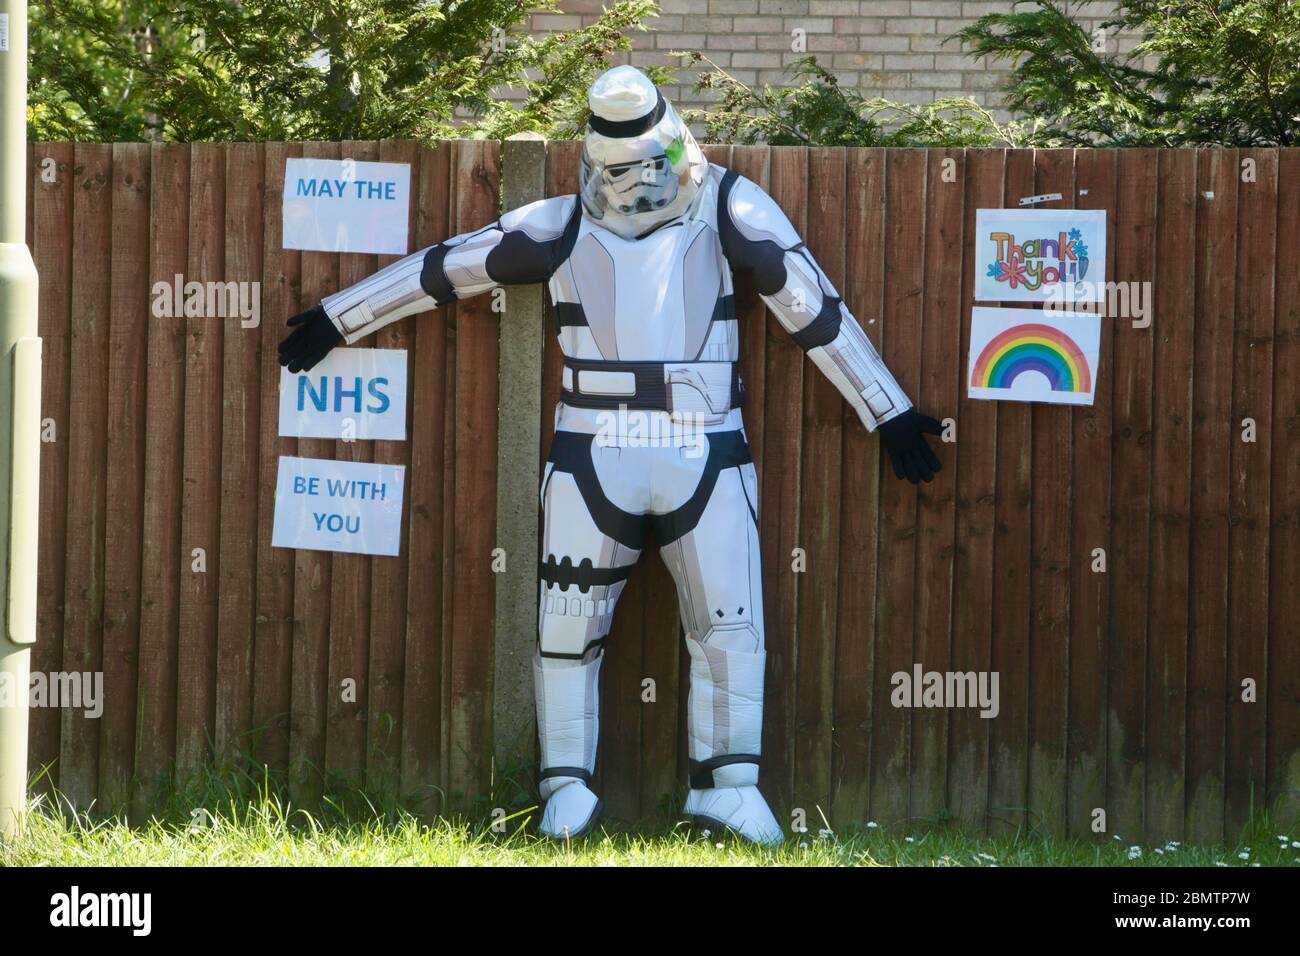 Star Wars figure pendant le verrouillage du coronavirus - Mai le NHS être avec vous! Dorset Royaume-Uni Mai 2020 Banque D'Images